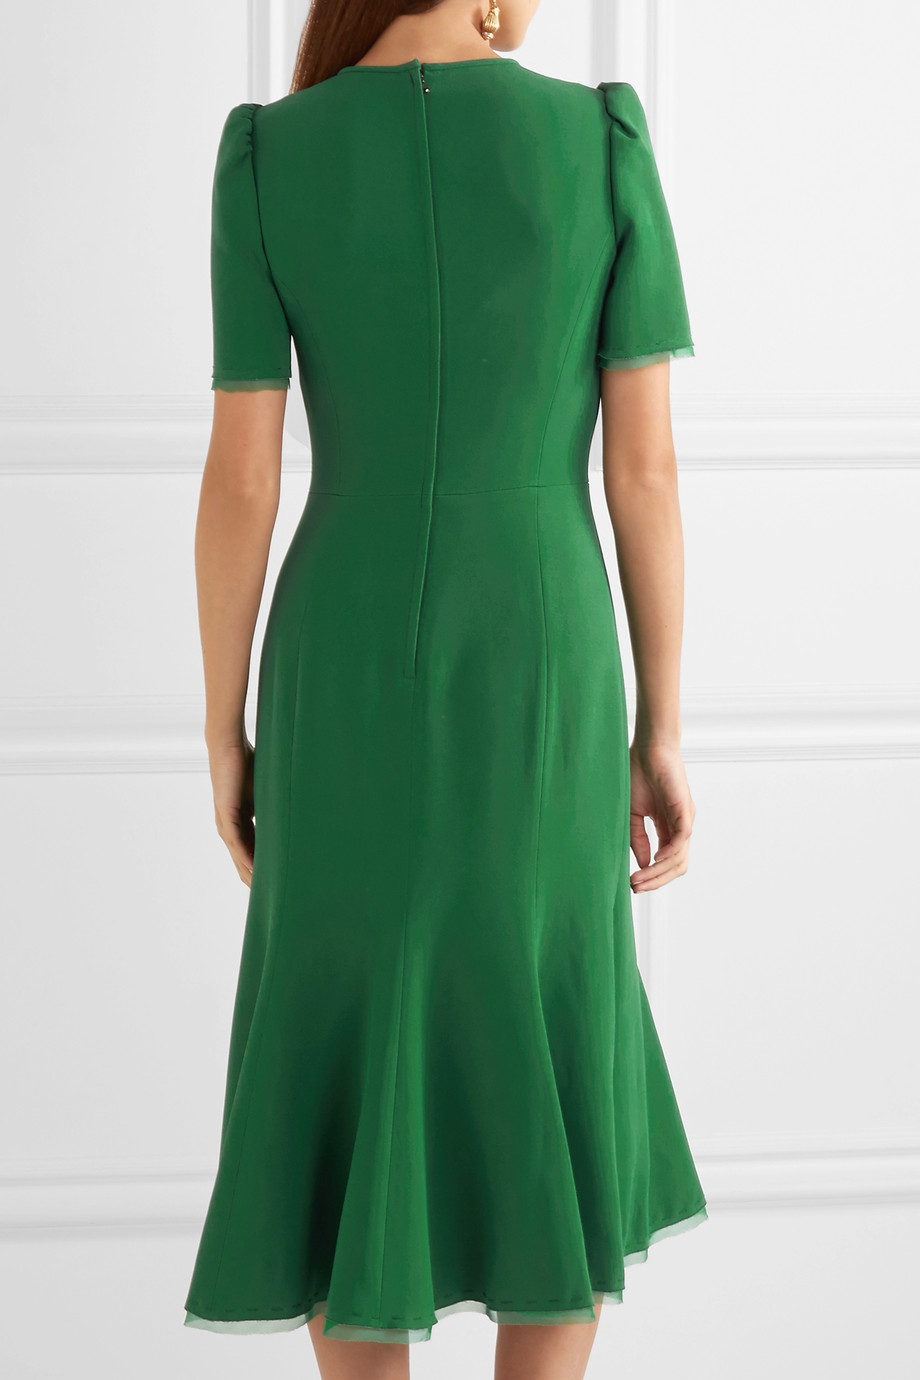 dolce gabbana green dress